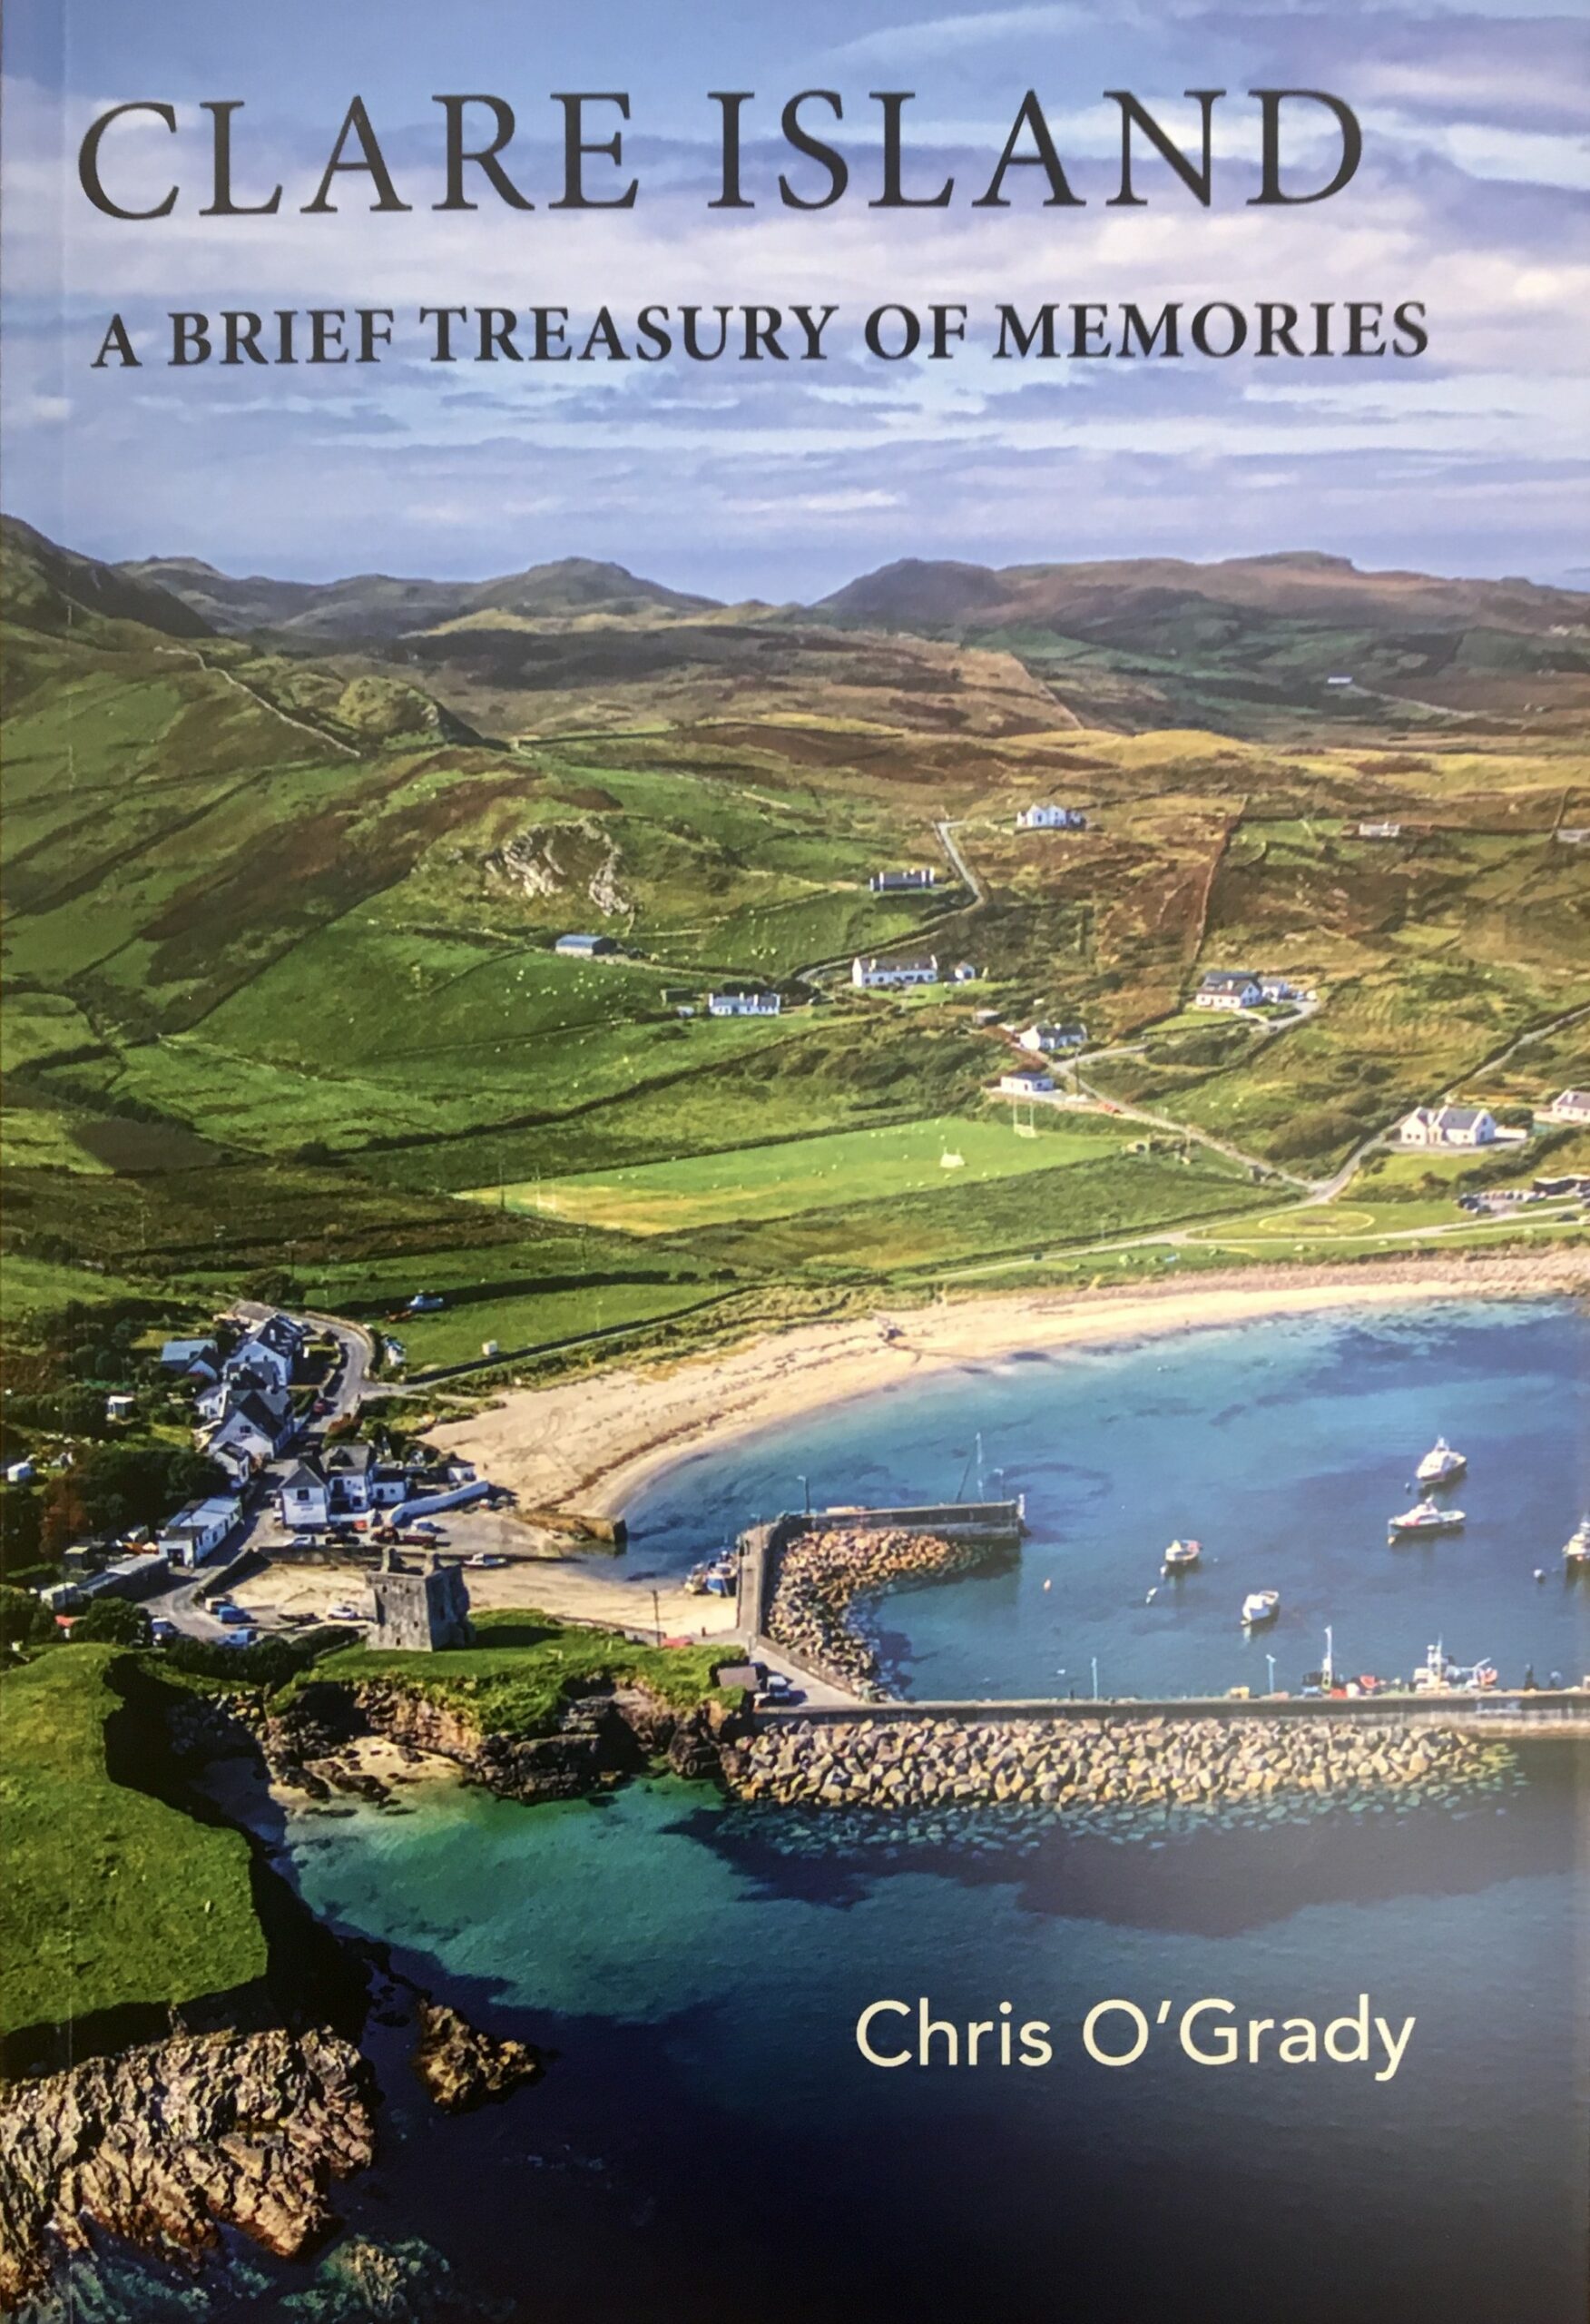 Clare Island : A Brief Treasury of Memories by Chris O'Grady